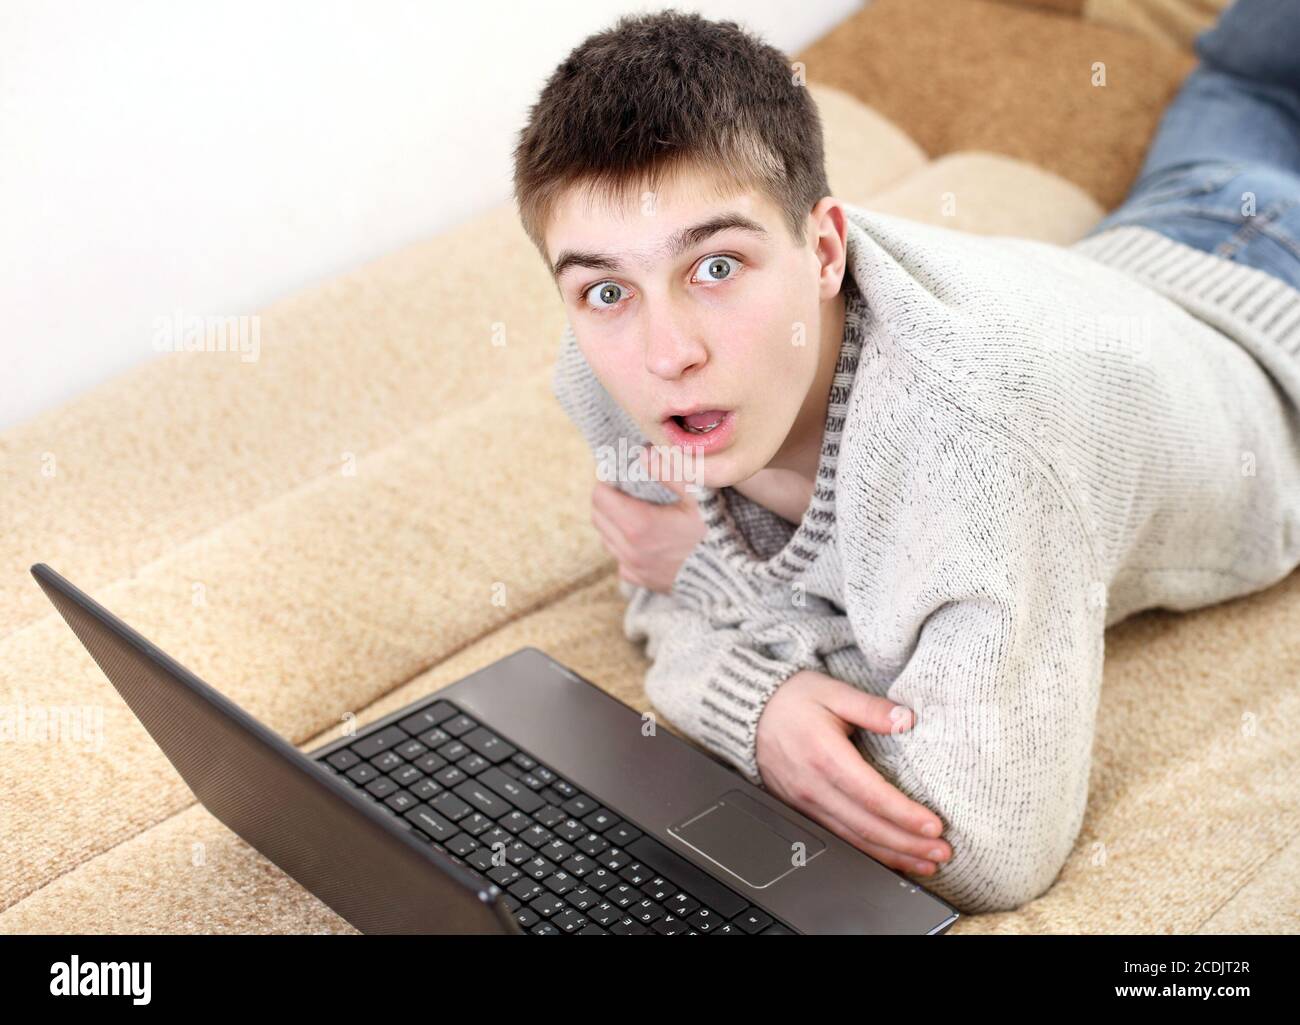 un adolescent stupéfié avec un ordinateur portable Banque D'Images